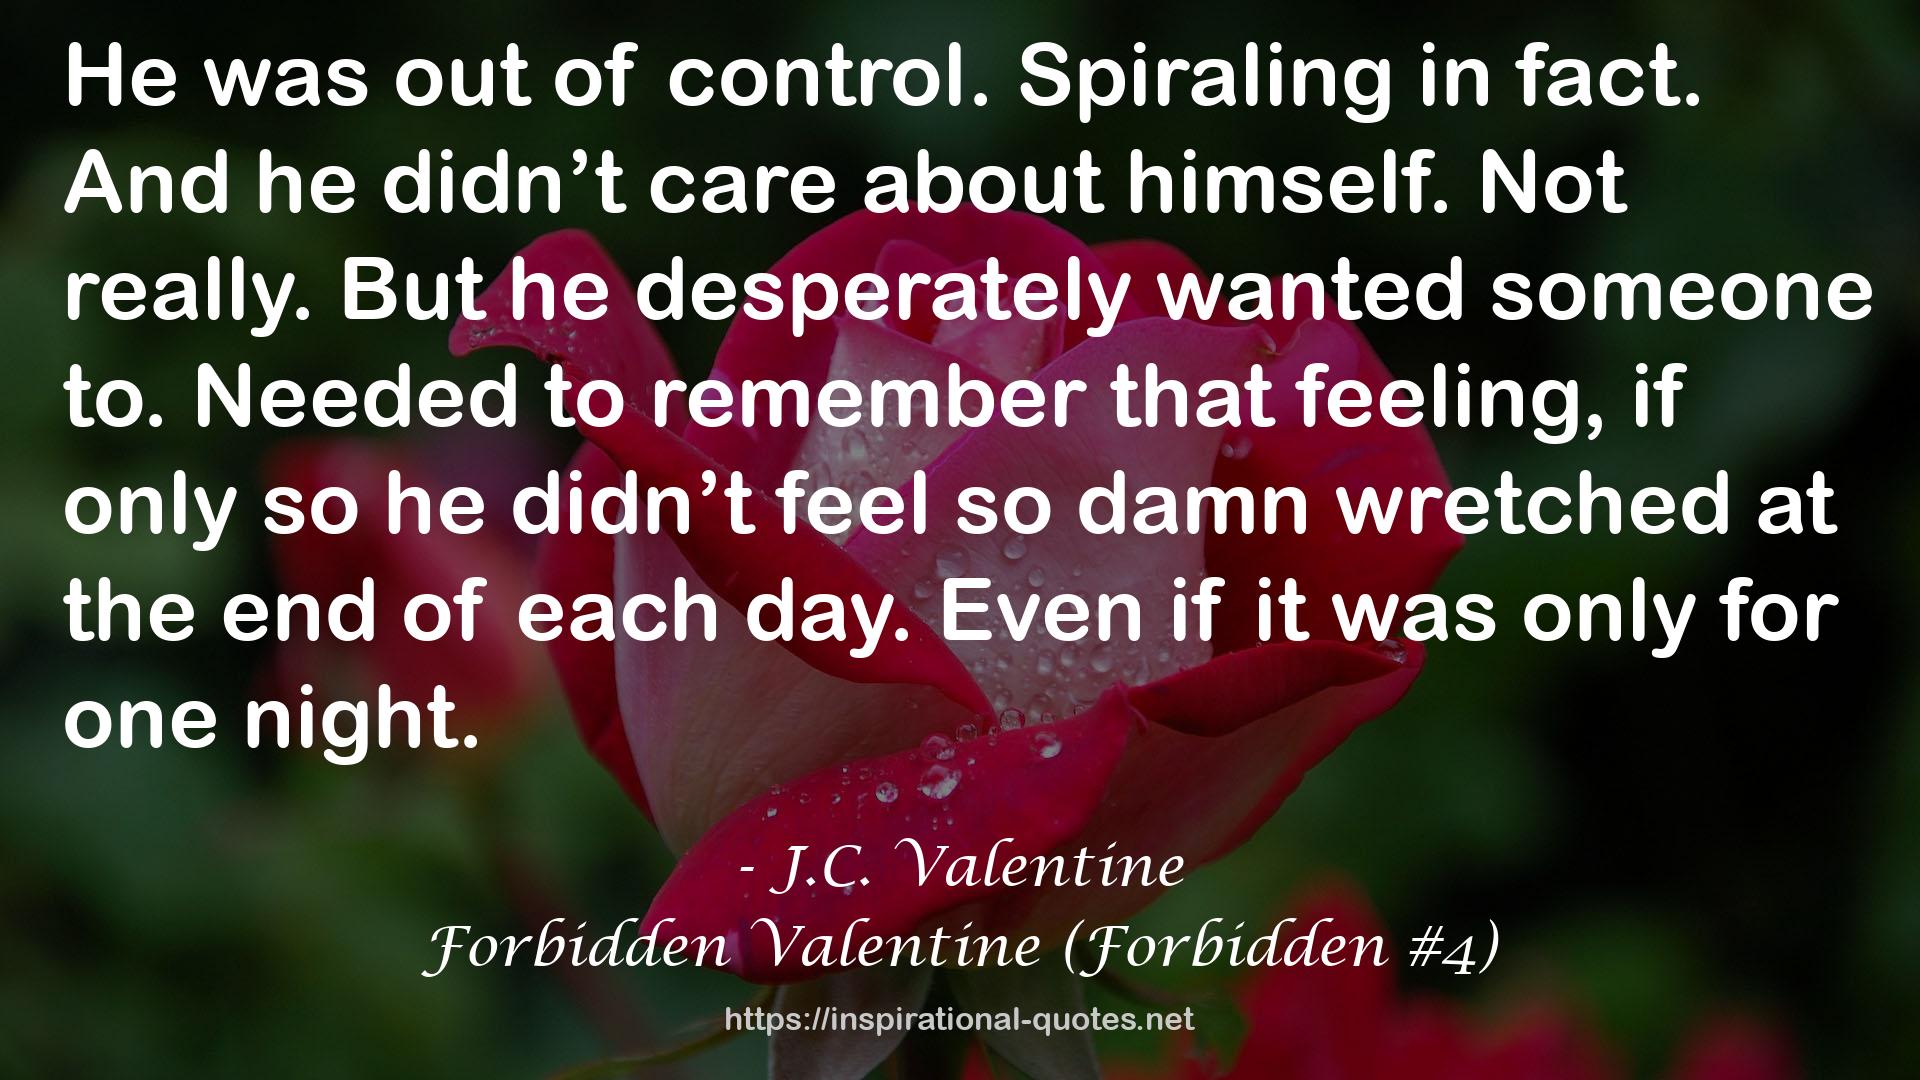 Forbidden Valentine (Forbidden #4) QUOTES